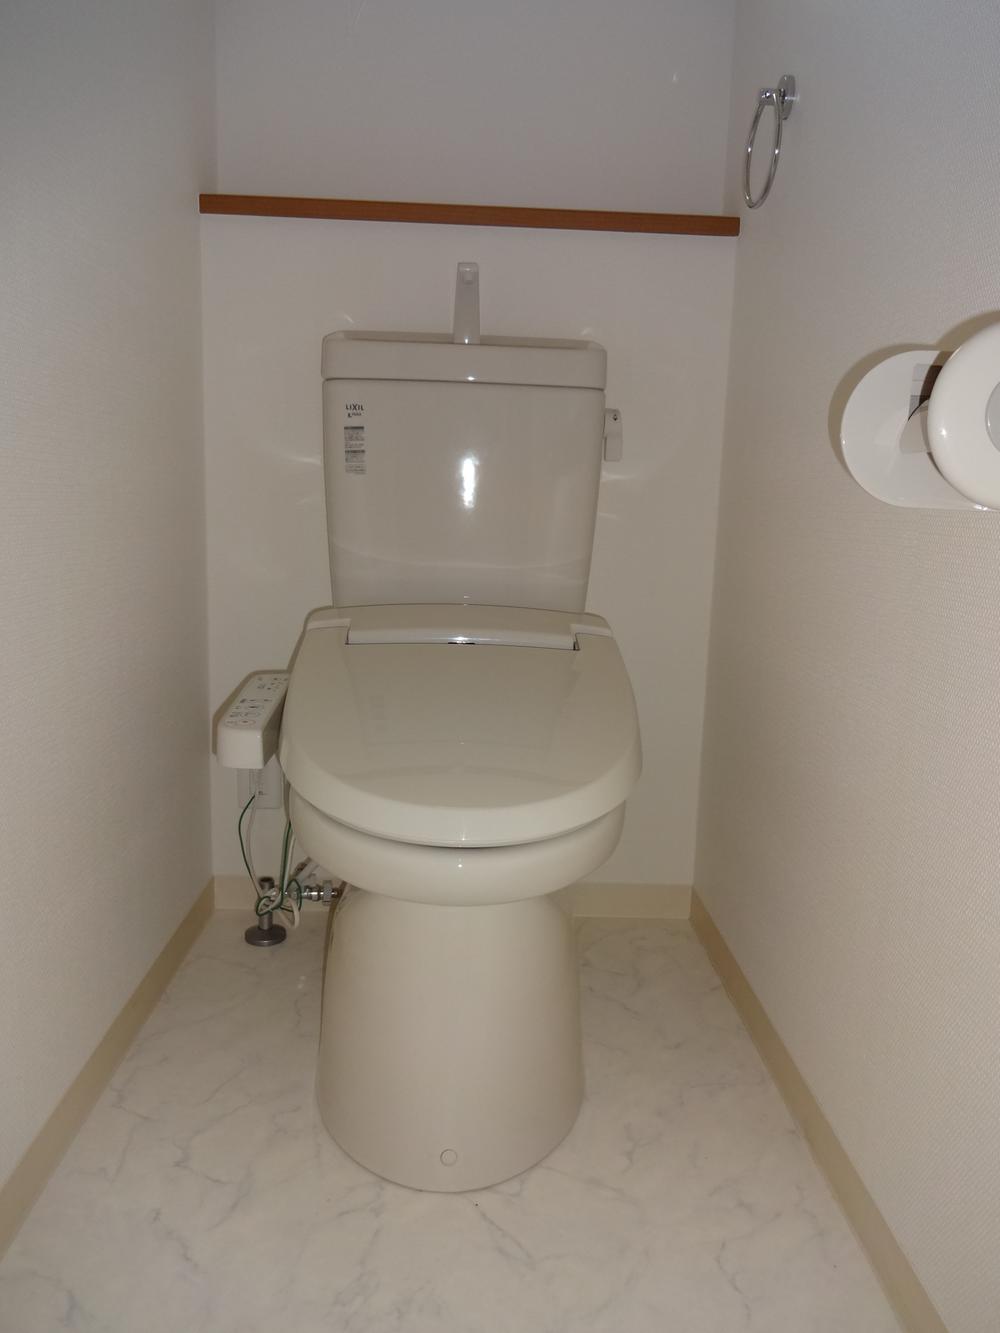 Toilet.  ■ toilet